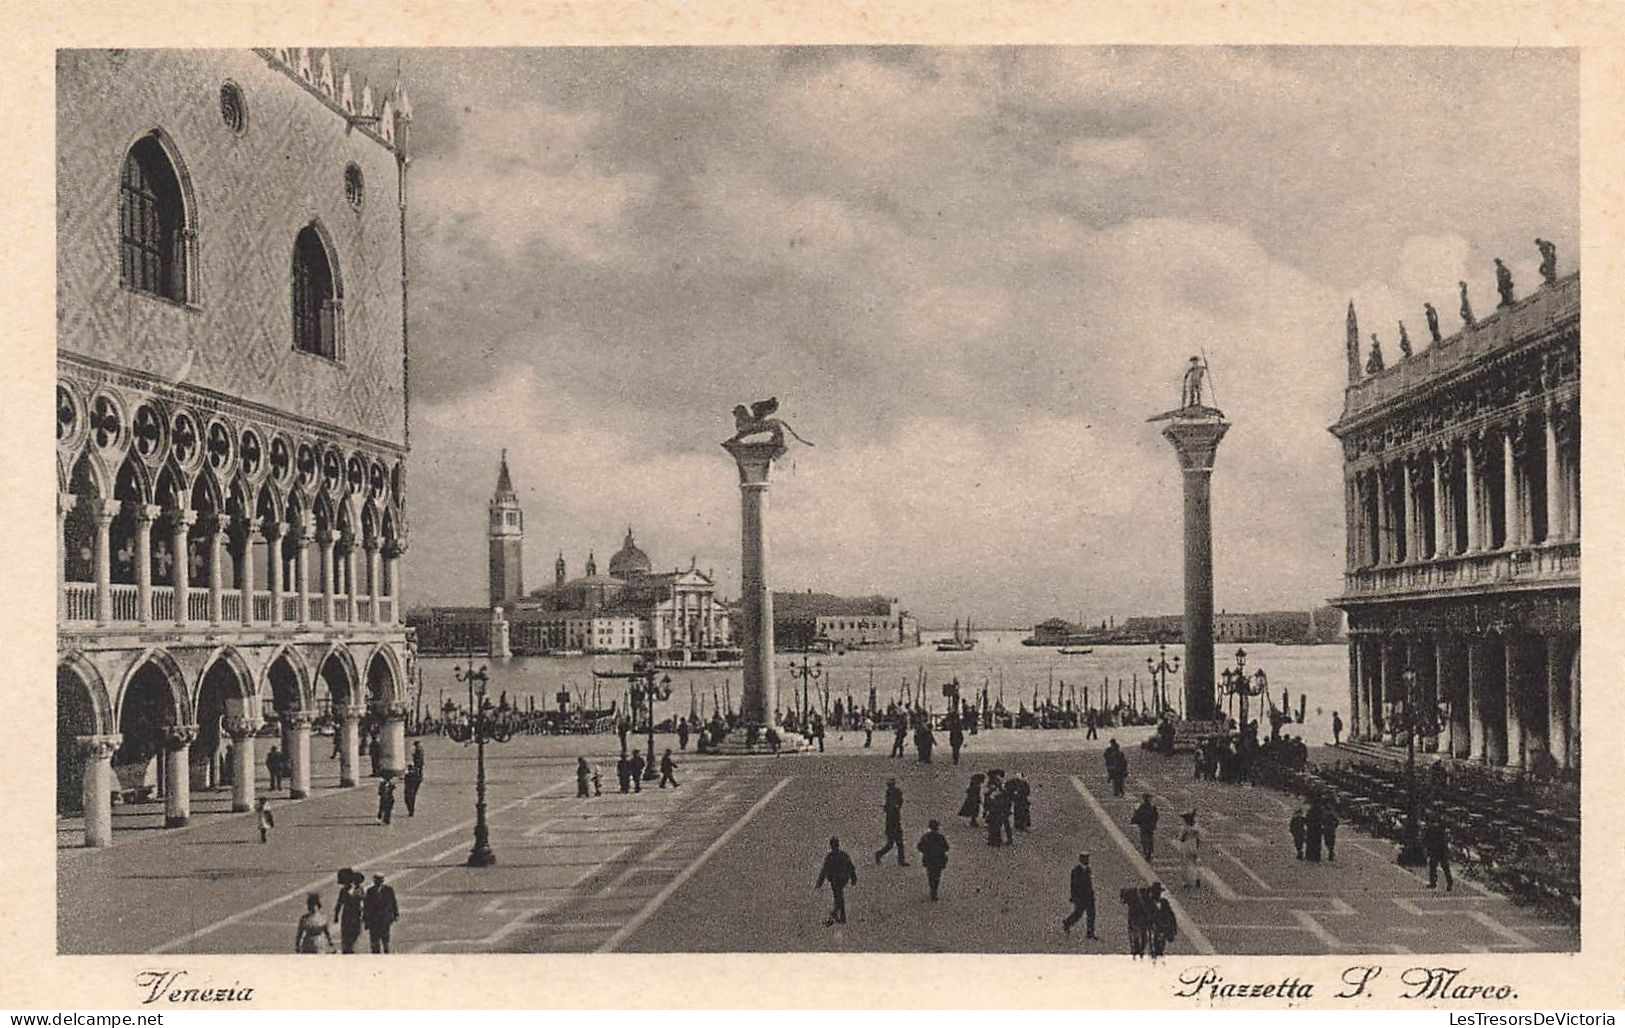 ITALIE - Venezia - Piazetta P Marco - Animé - Vue Générale - Carte Postale Ancienne - Venetië (Venice)